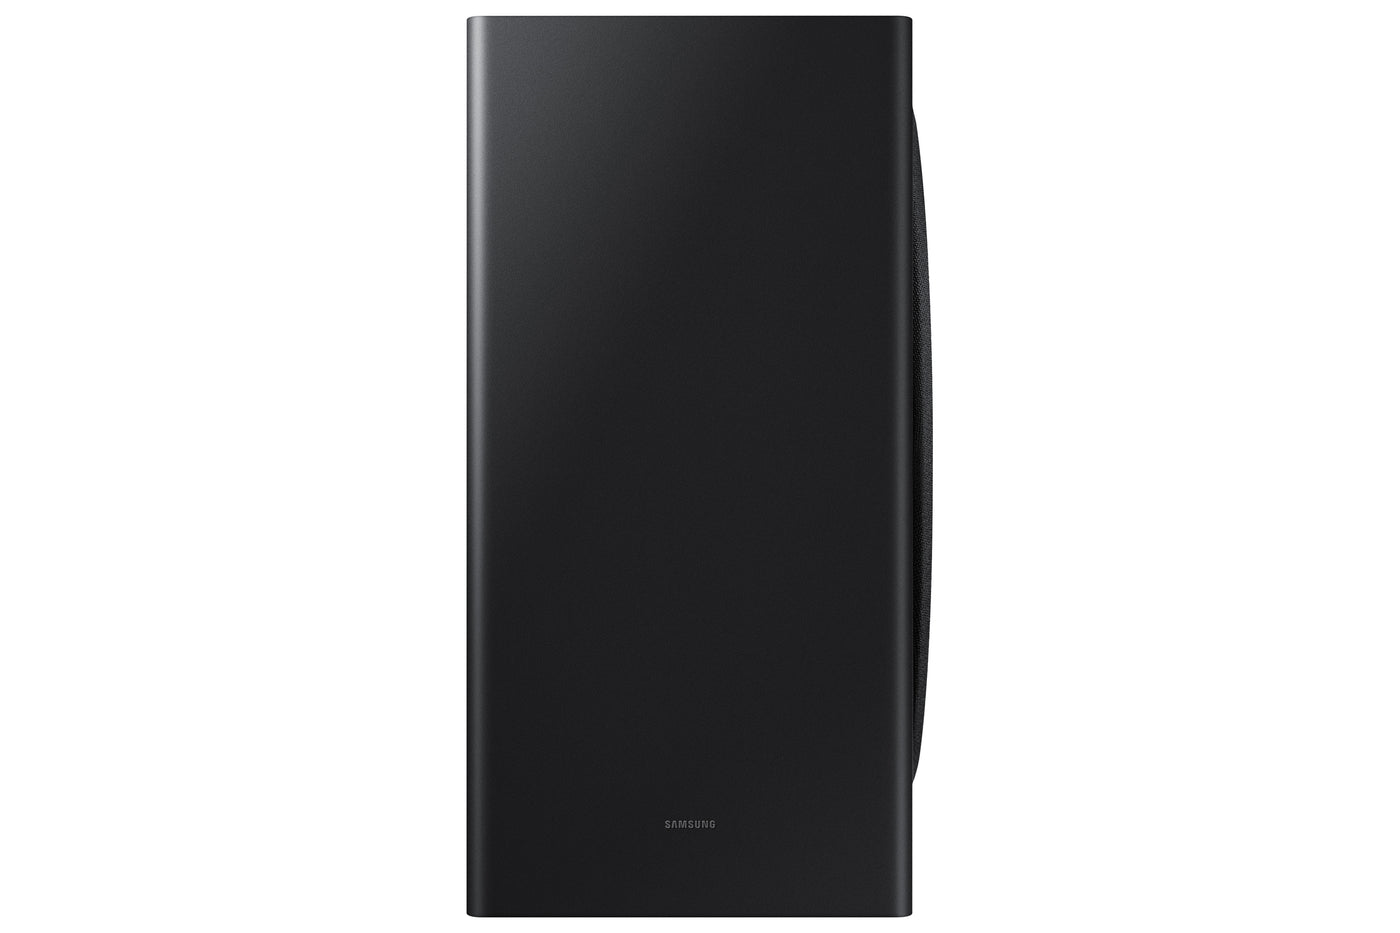 Samsung Q Series 5.1.2 Ch. Dolby Atmos Soundbar - HW-Q800C/ZC